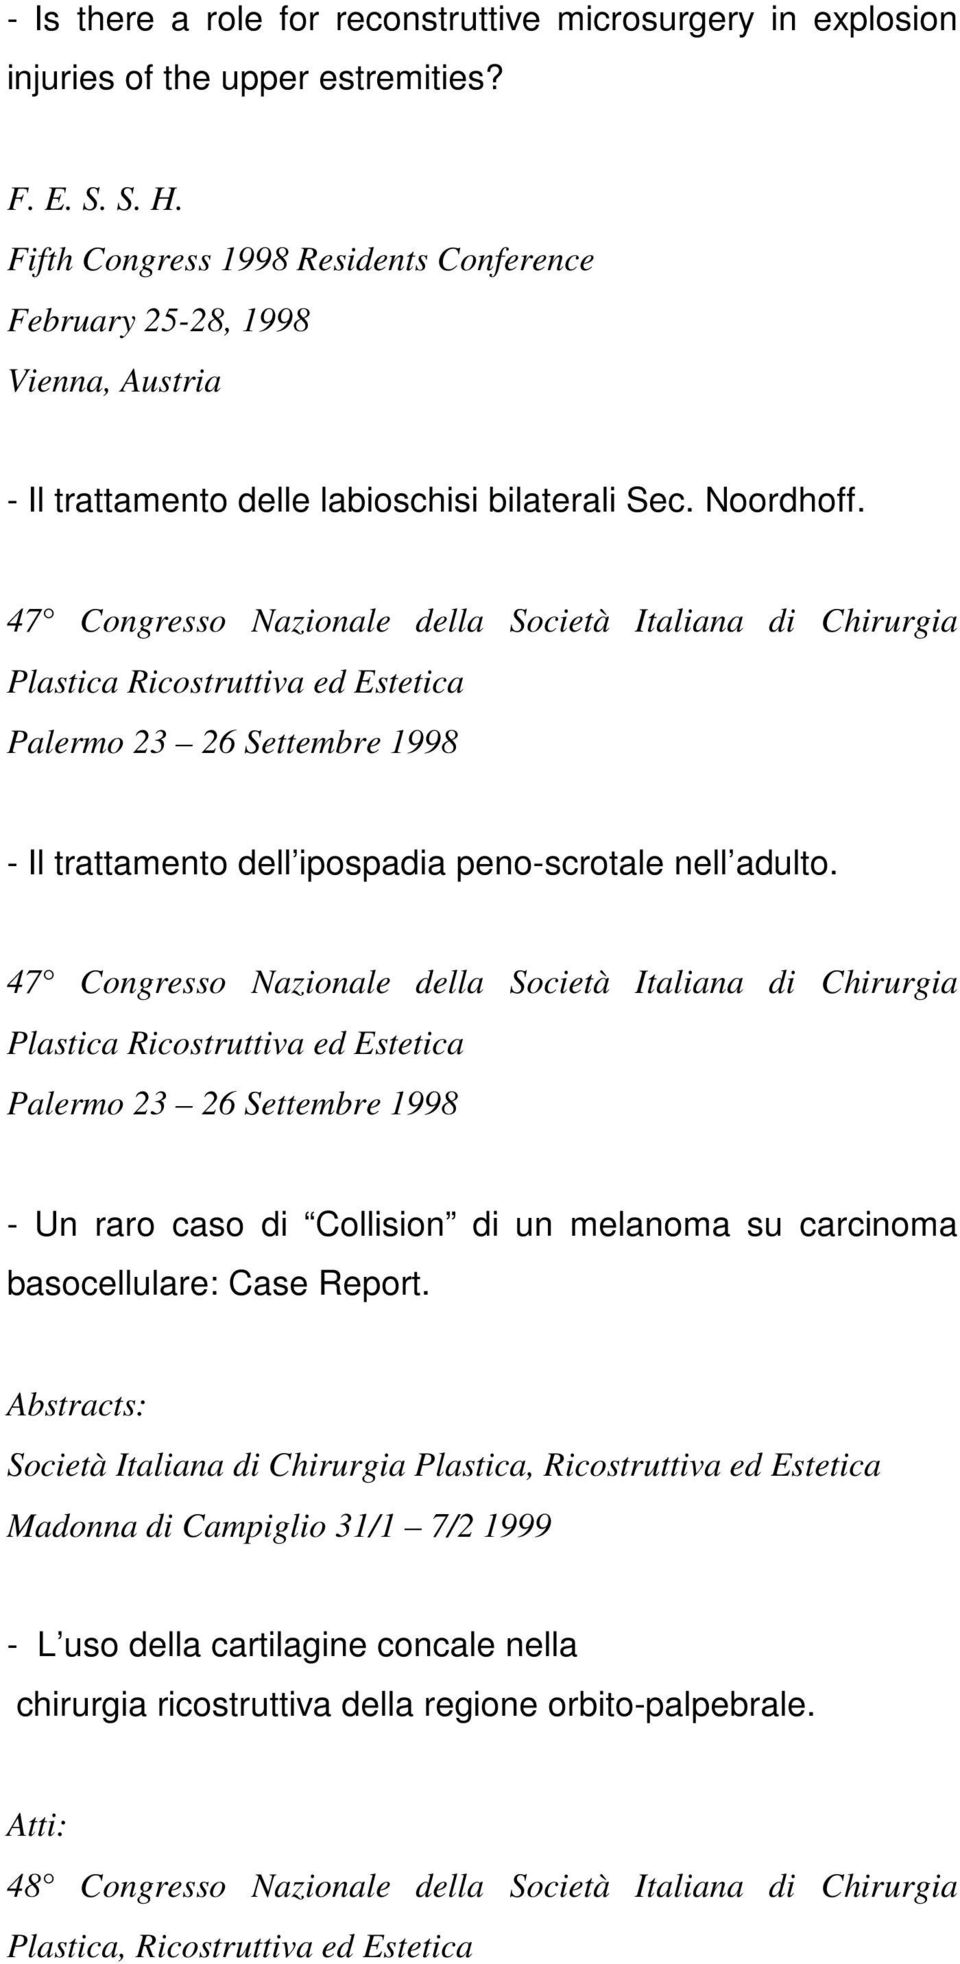 47 Congresso Nazionale della Società Italiana di Chirurgia Plastica Ricostruttiva ed Estetica Palermo 23 26 Settembre 1998 - Il trattamento dell ipospadia peno-scrotale nell adulto.